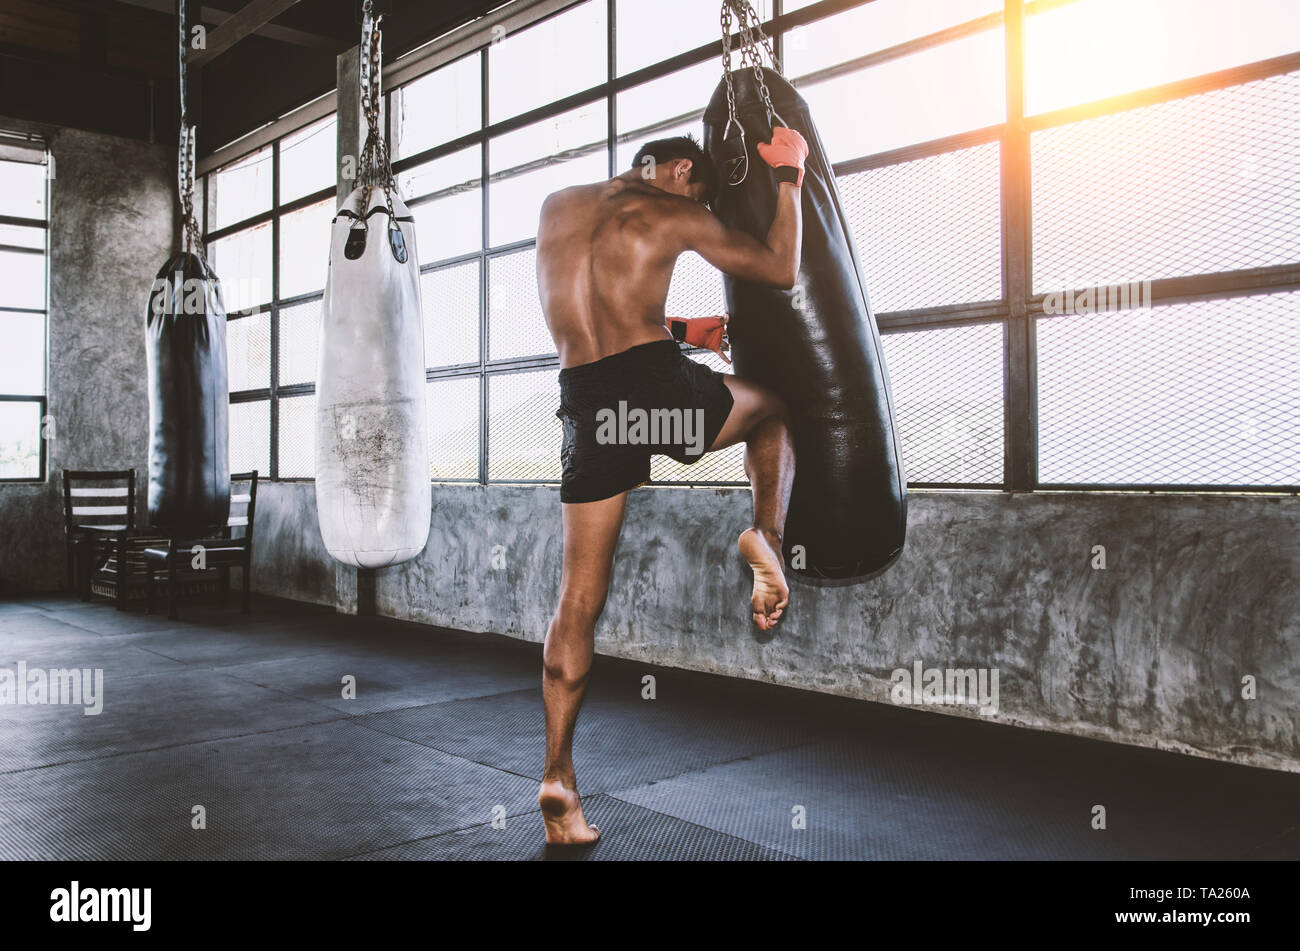 Luchador de muay thai entrenando en el gimnasio con el punch bag Foto de stock